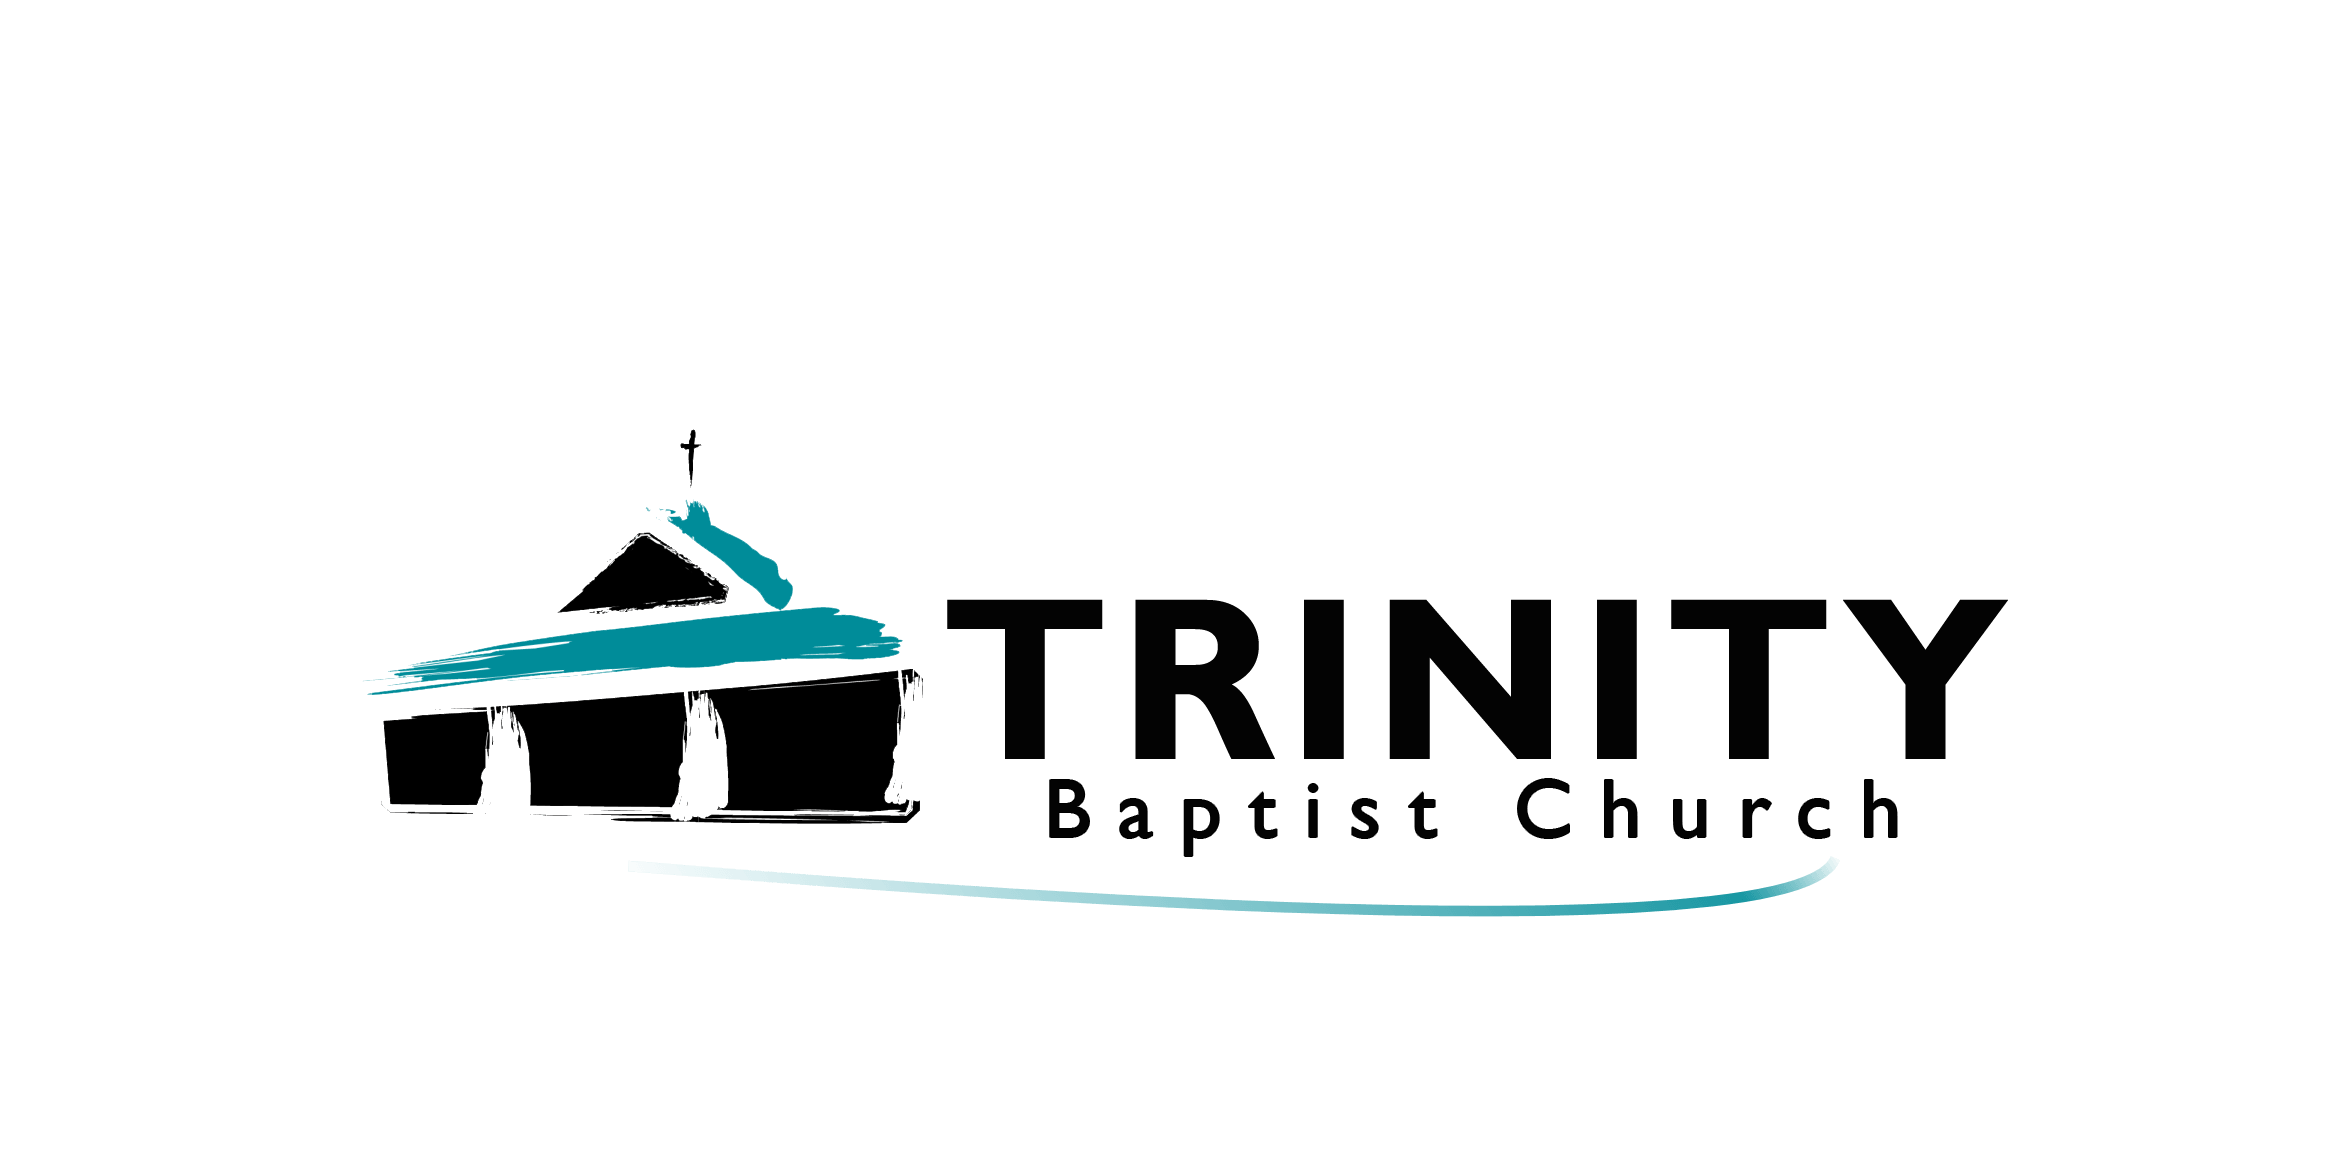 Church Logo - Trinity Baptist Church Lake Charles Baptist Church